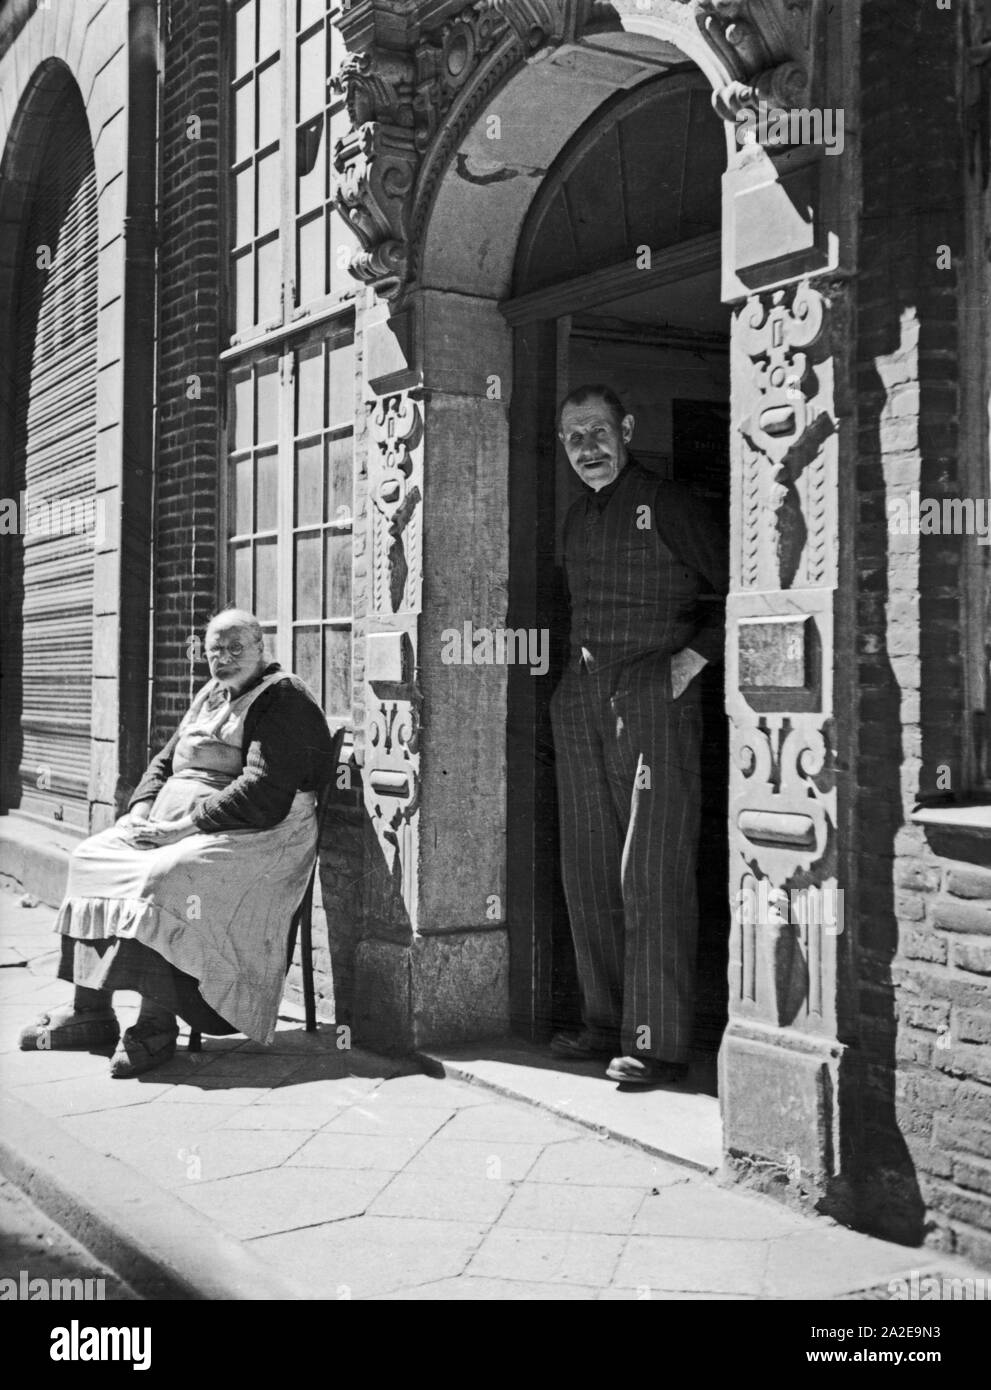 Danzig, ein alter Hauseingang mit den Hausbewohnern, 1930er Jahre. Gdansk, old house entrance with inhabitants, 1930s. Stock Photo